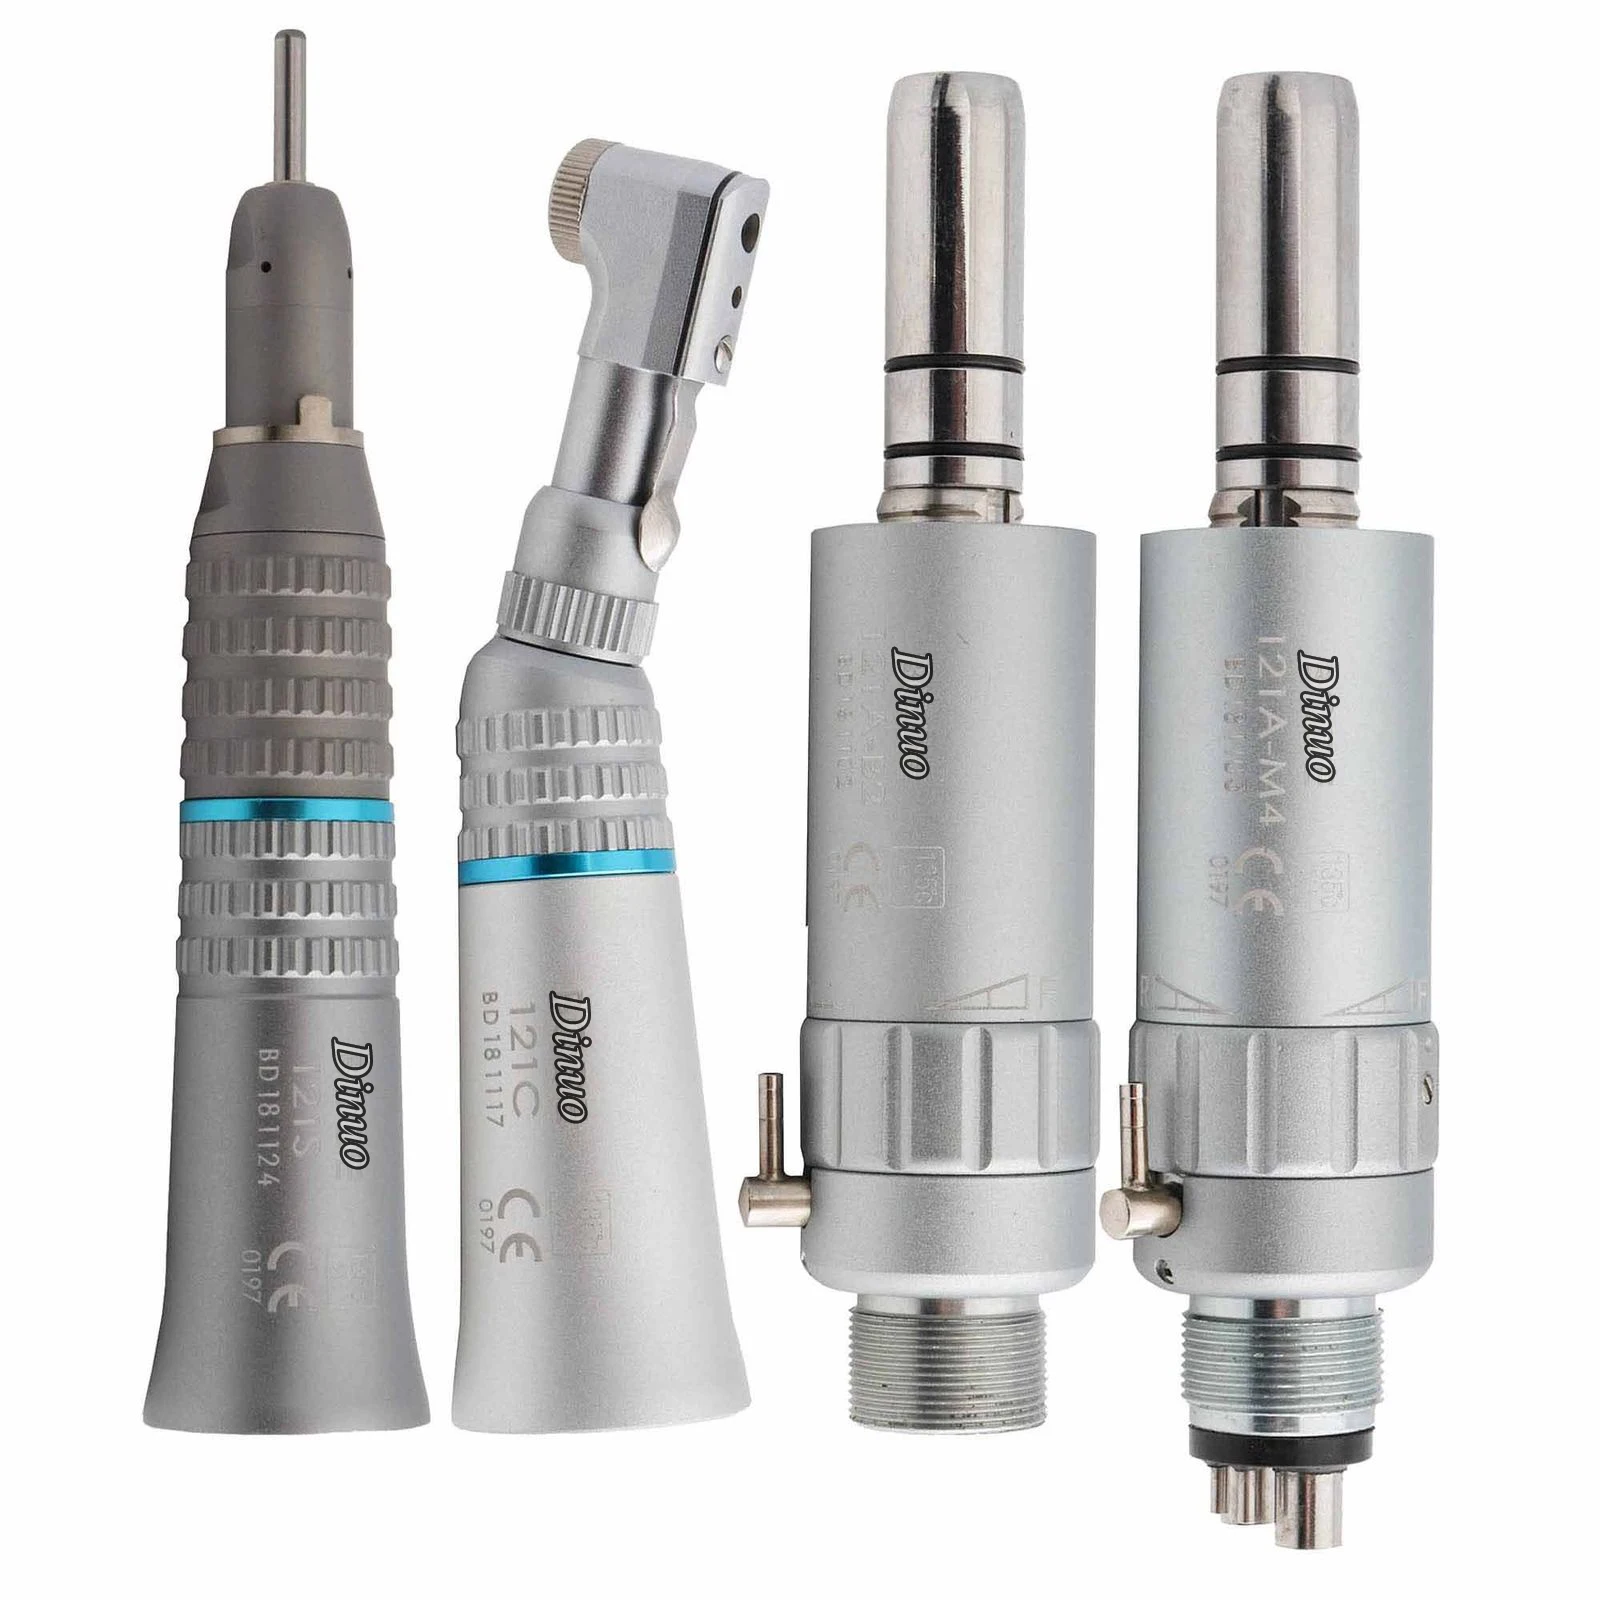 NSK стоматологический набор низкоскоростных наконечников EX-203 e-типа для отбеливания зубов лабораторное оборудование инструменты